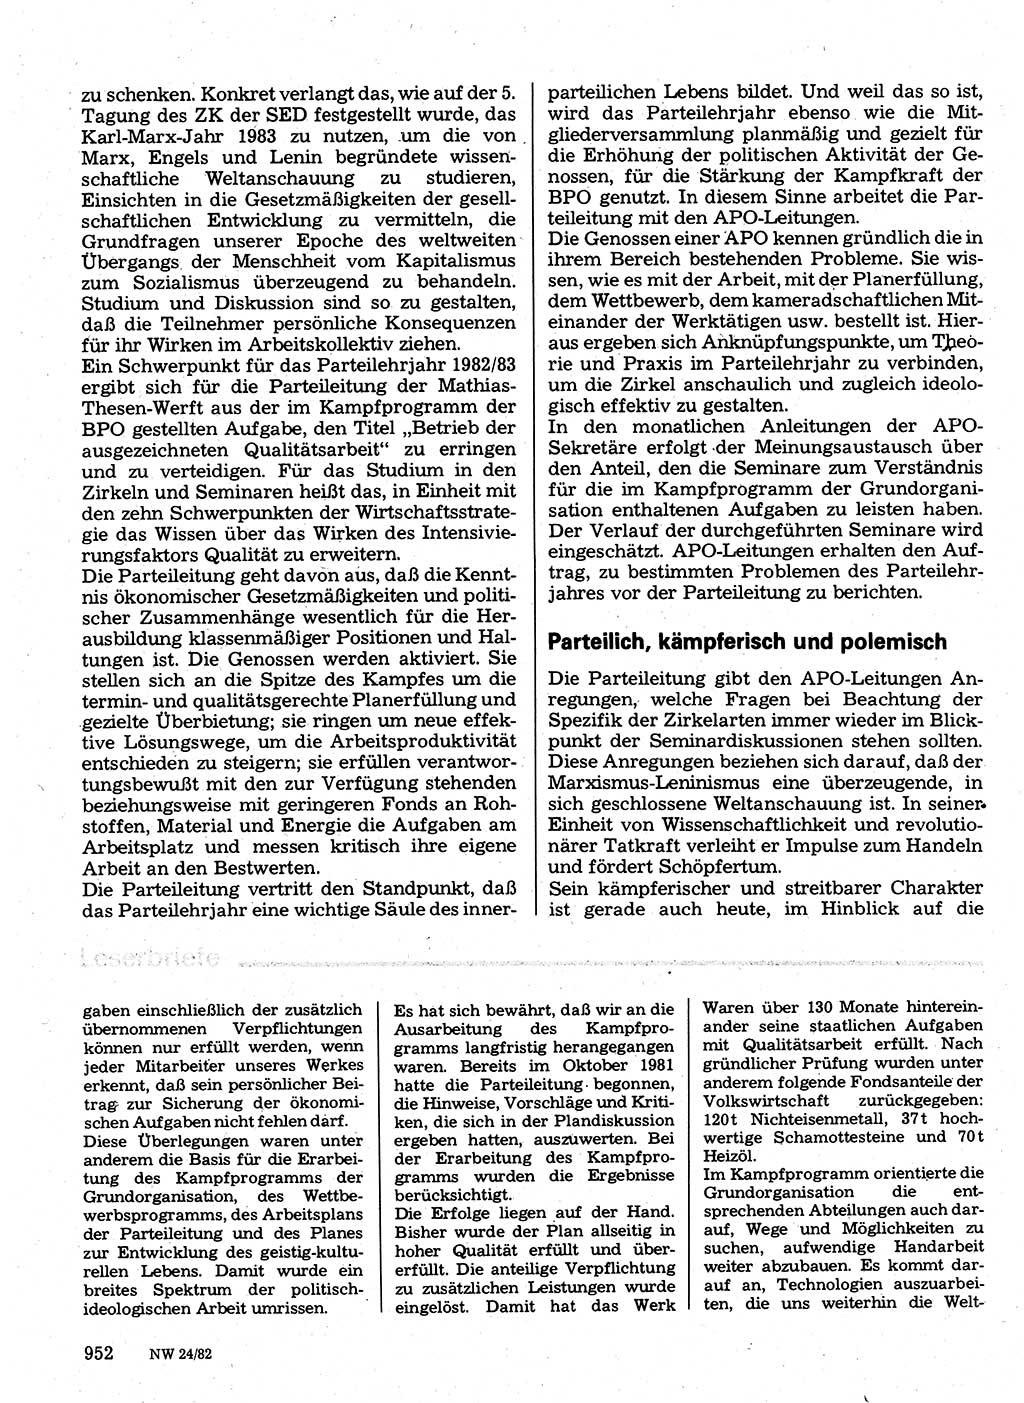 Neuer Weg (NW), Organ des Zentralkomitees (ZK) der SED (Sozialistische Einheitspartei Deutschlands) für Fragen des Parteilebens, 37. Jahrgang [Deutsche Demokratische Republik (DDR)] 1982, Seite 952 (NW ZK SED DDR 1982, S. 952)